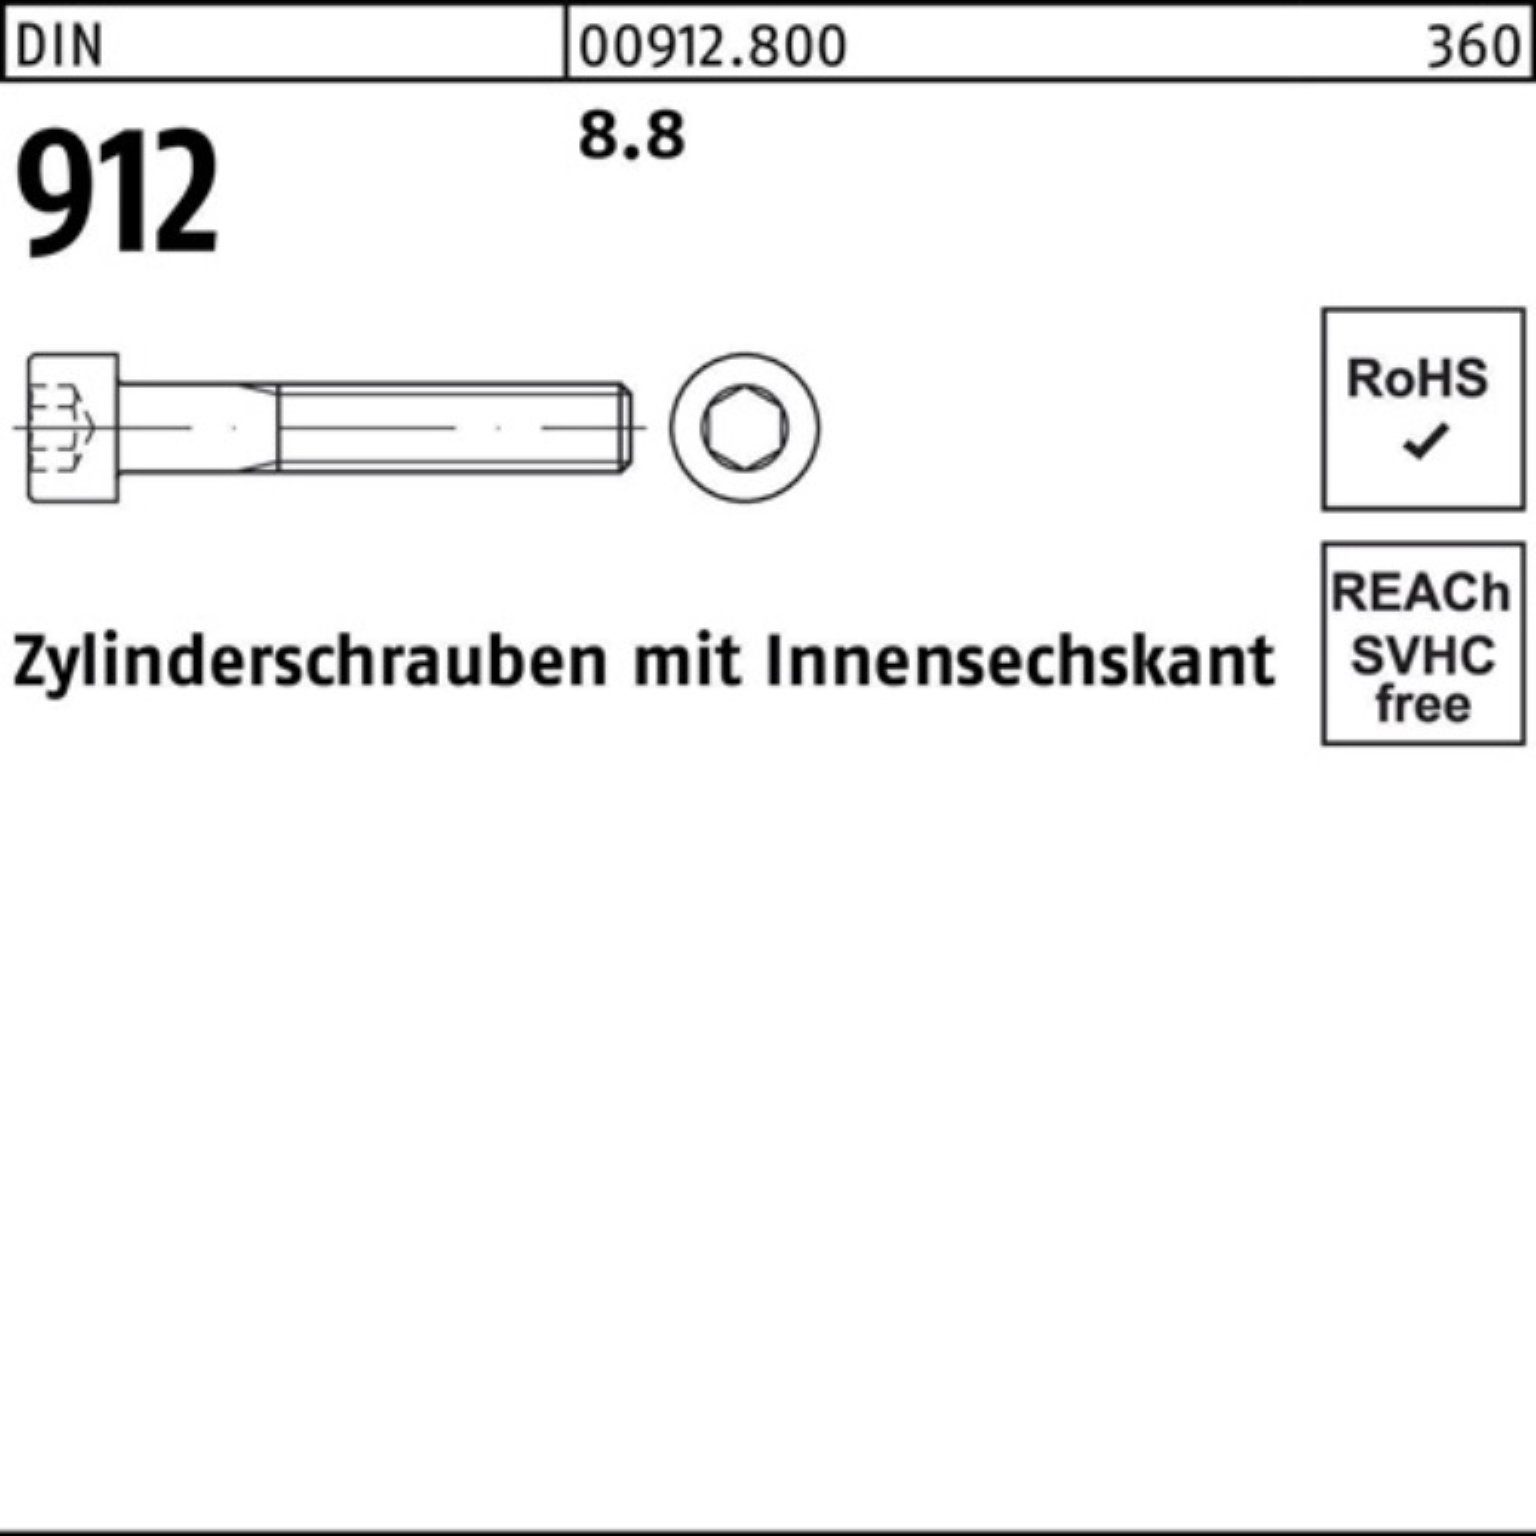 Pack Zylinderschraube Stück 100er Reyher 8.8 912 50 45 DIN Innen-6kt Zylinderschraube DI M14x